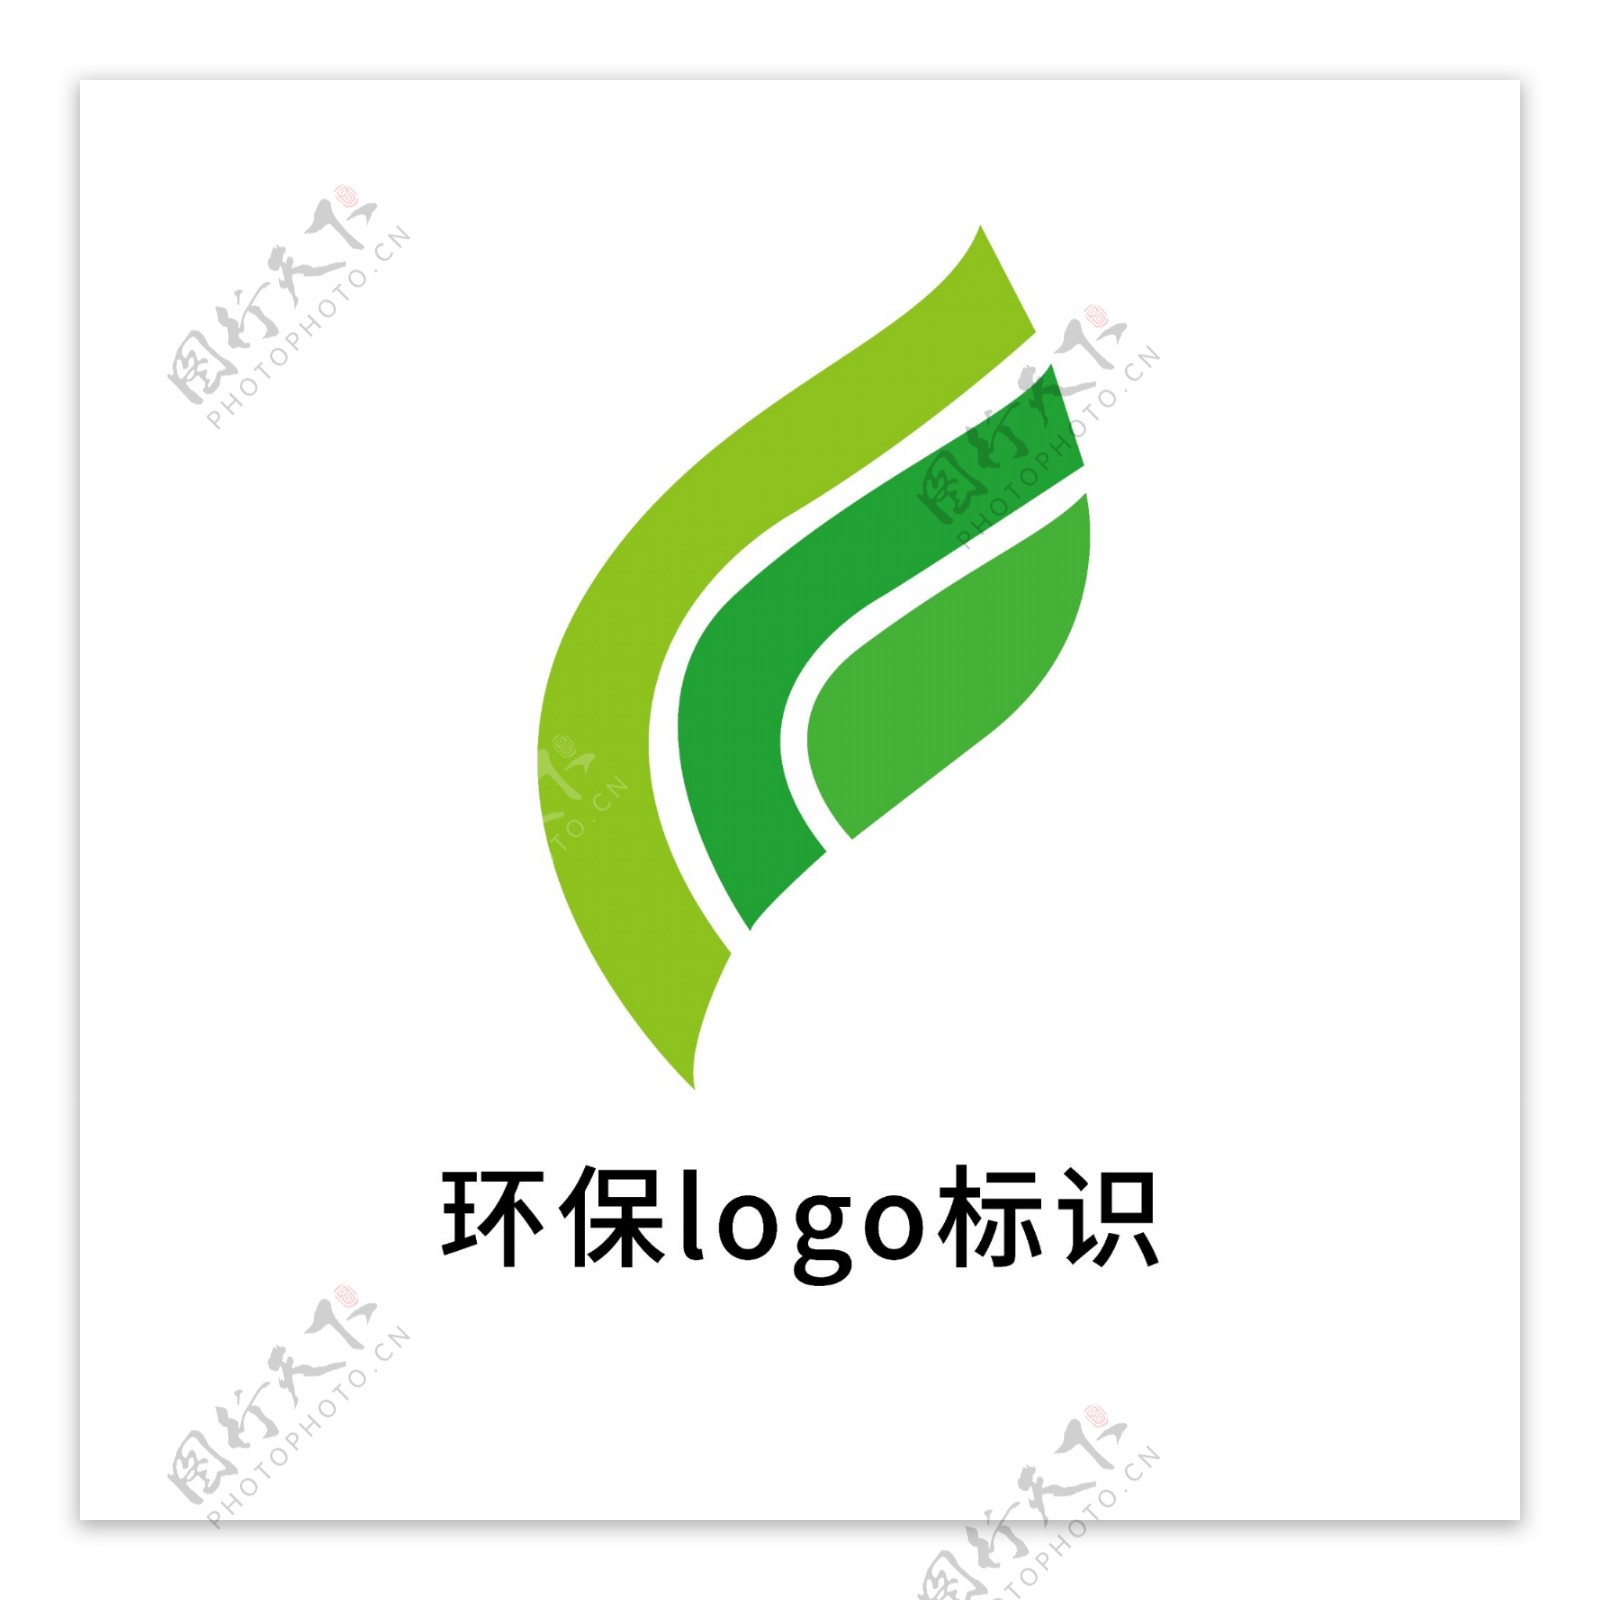 环保LOGO标识模板